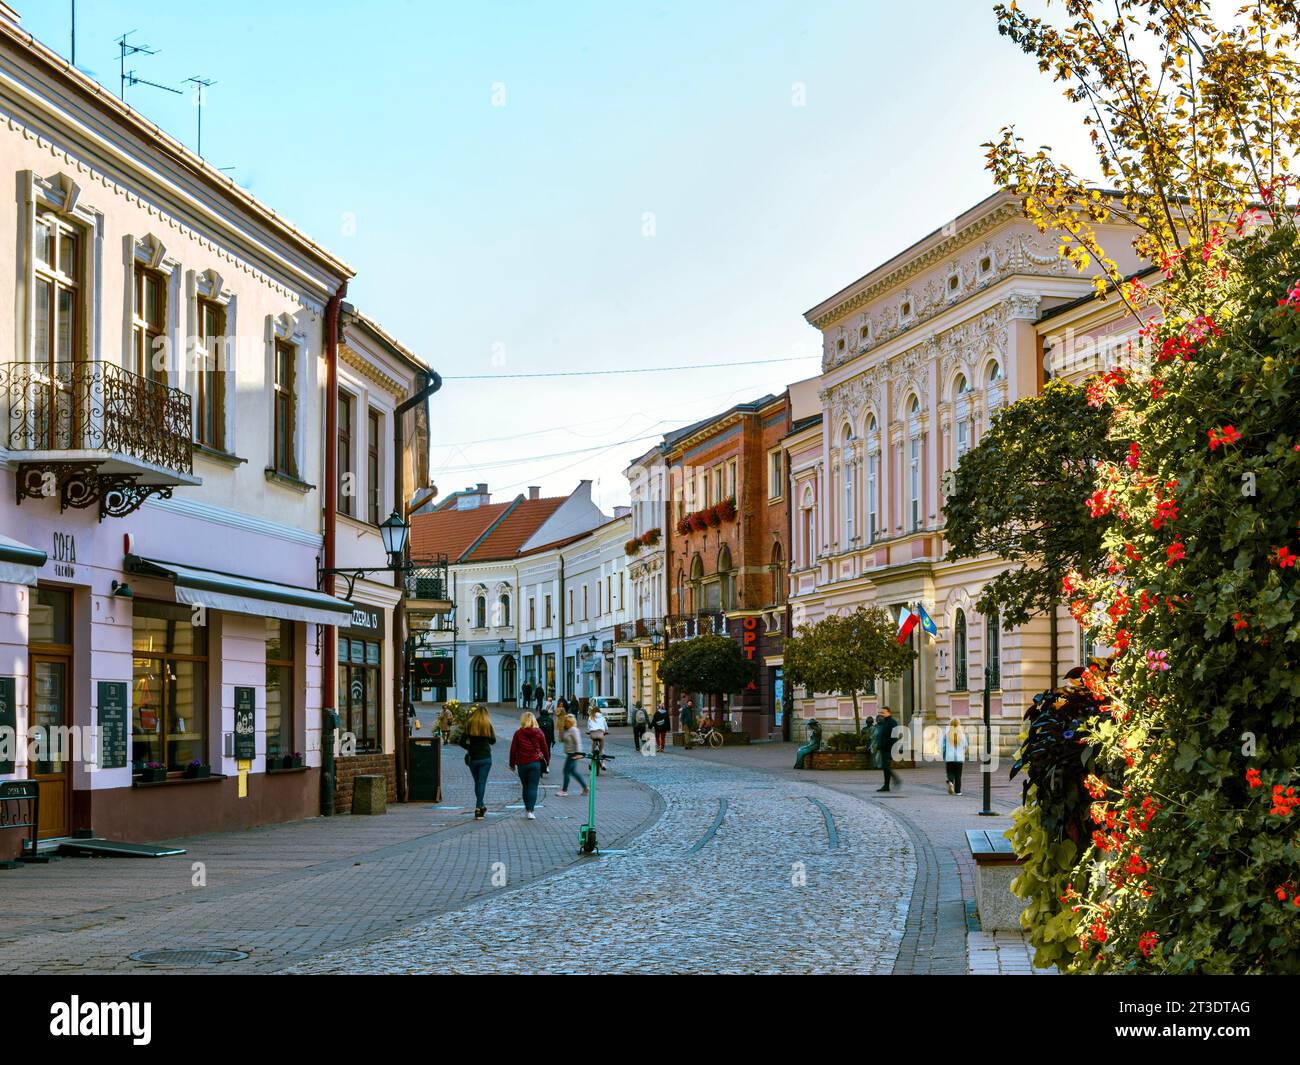 La città di Tarnow non è solo la bellezza unica della città vecchia, che ha conservato le strade medievali, i capolavori architettonici del gotico, della Polonia. Foto Stock